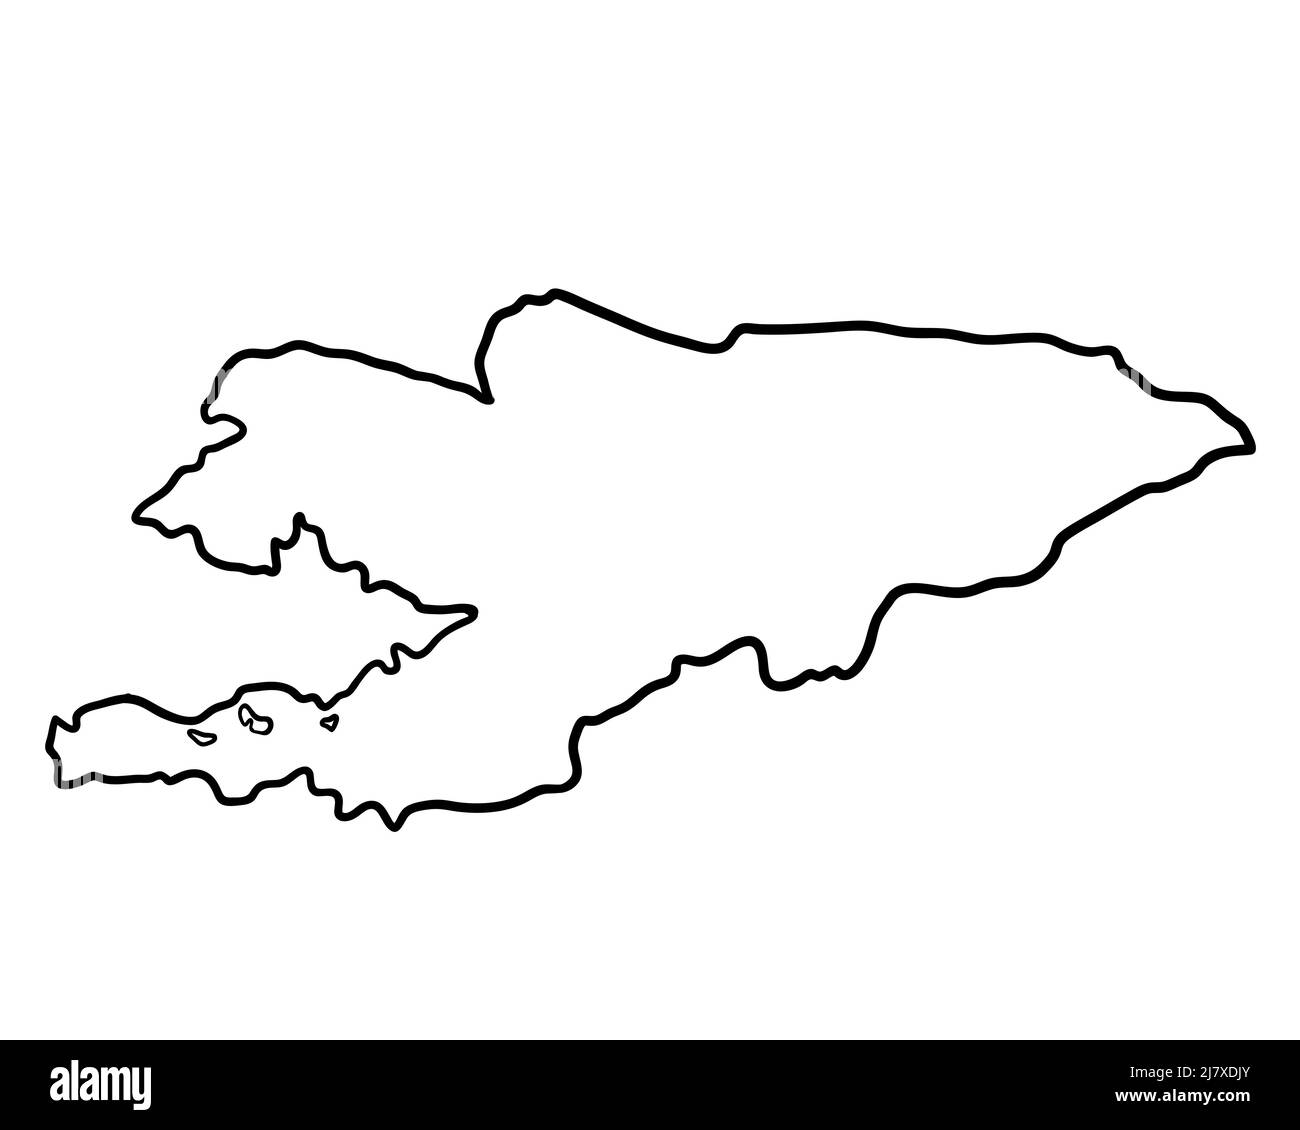 Kirghizistan - cartografia disegnata a mano Foto Stock